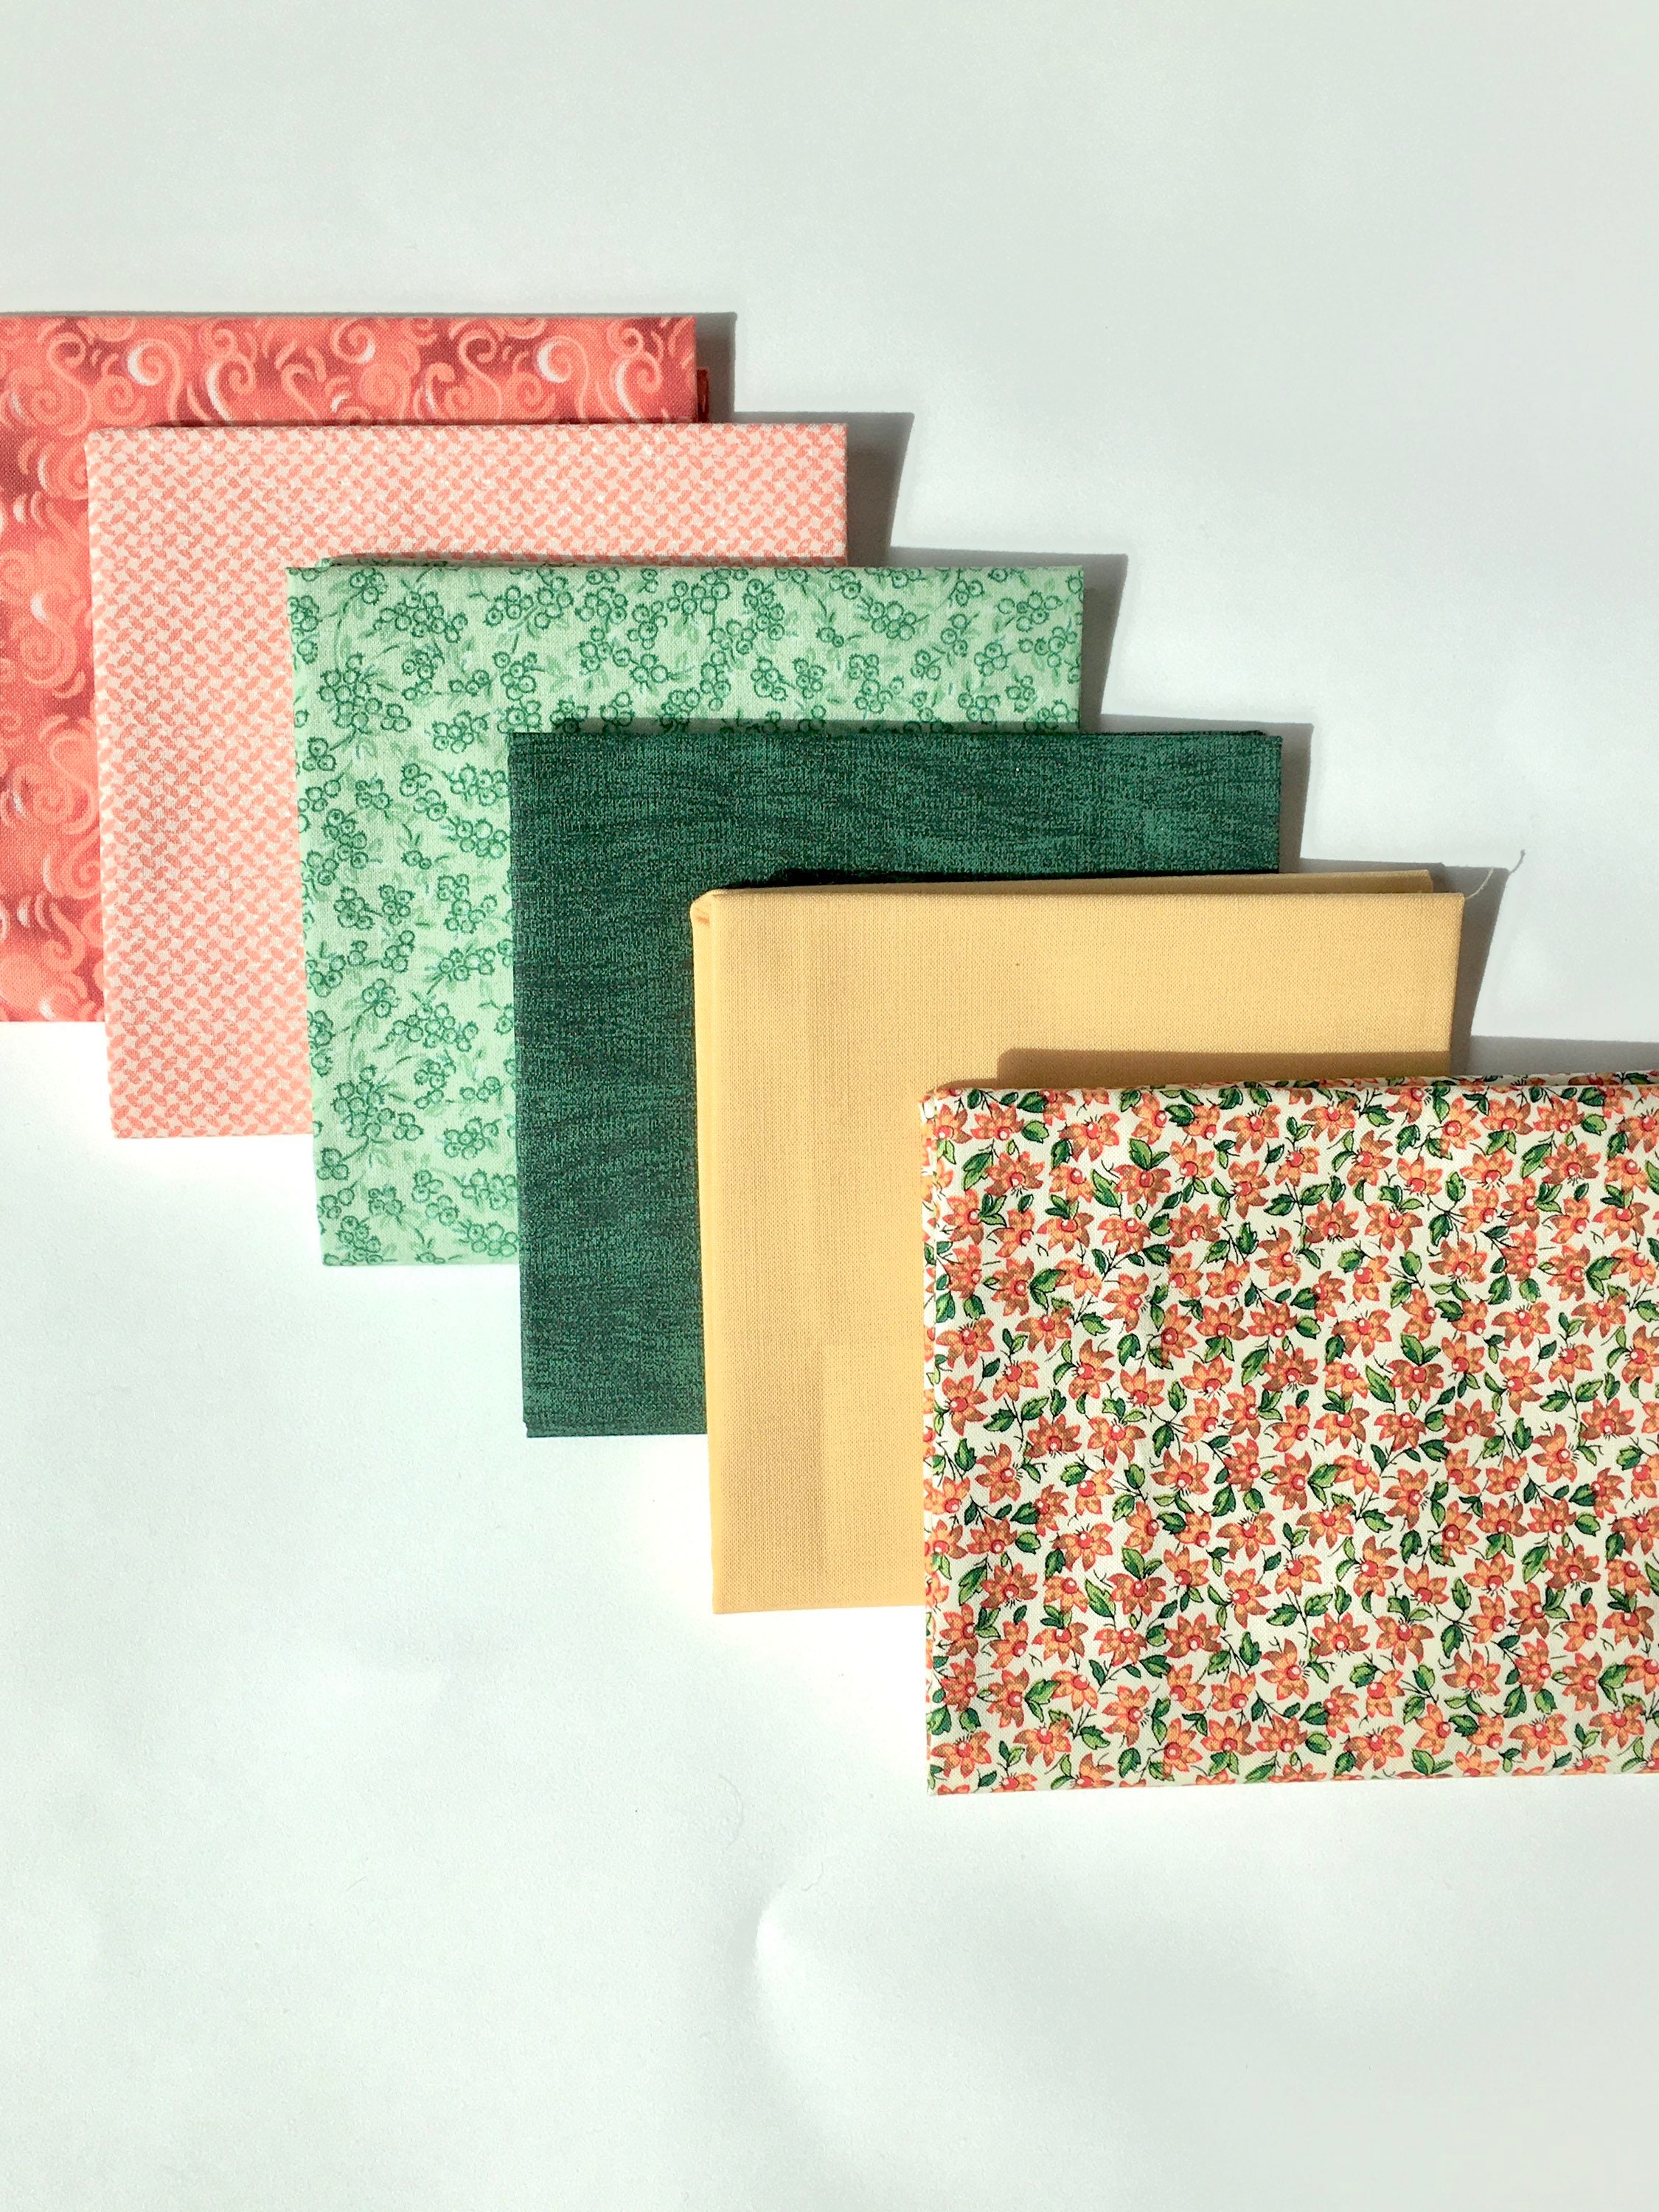 Hanjunzhao Vintage Rose Floral Fat Quarters Fabric Bundles 18 x 22 Inches for SE